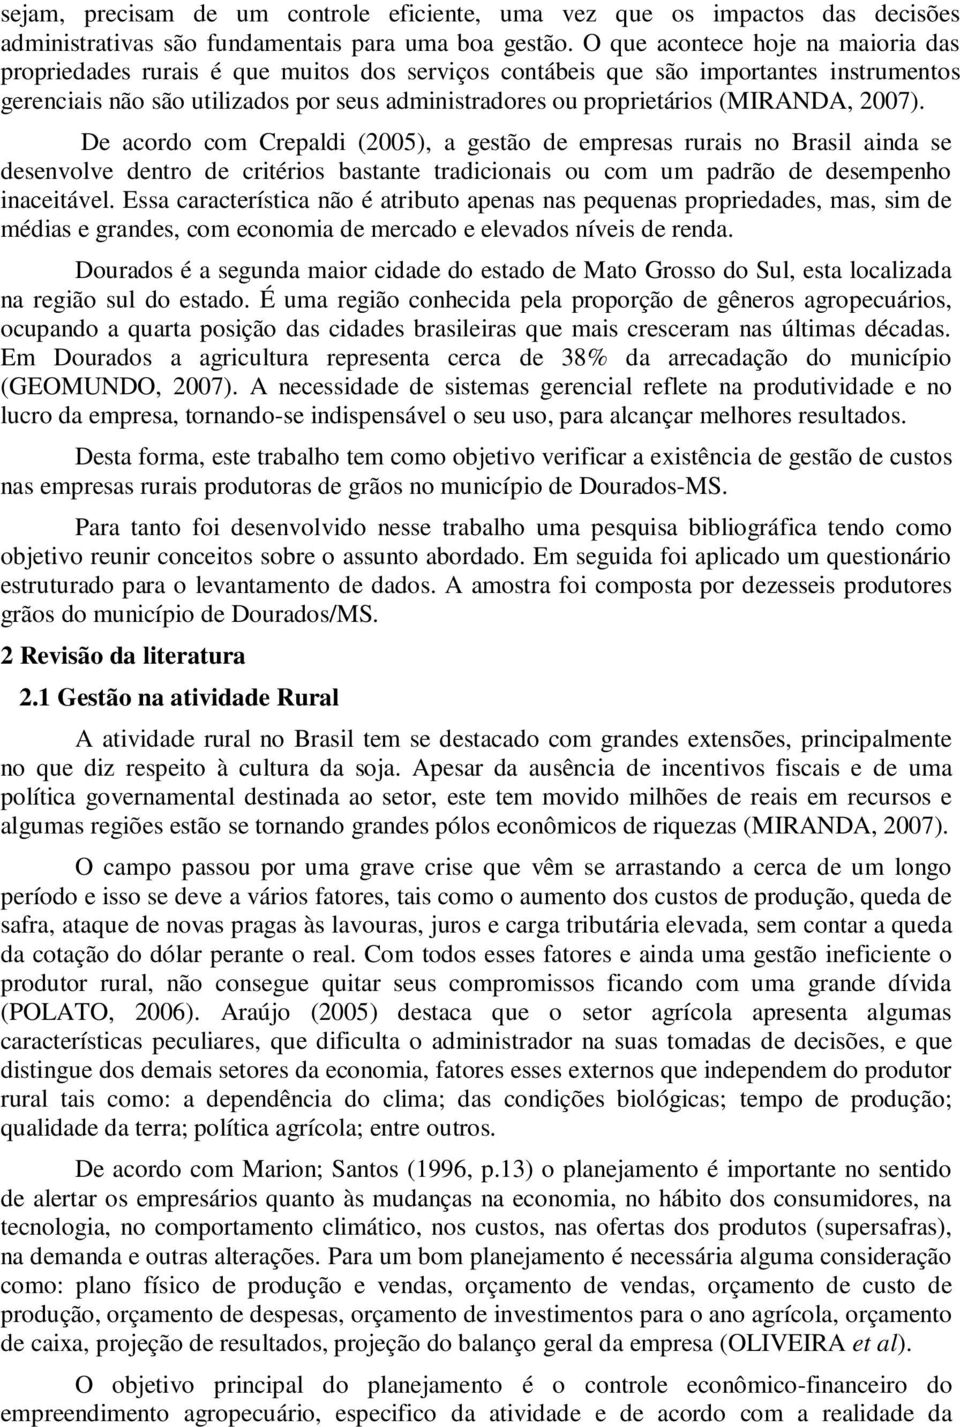 (MIRANDA, 2007). De acordo com Crepaldi (2005), a gestão de empresas rurais no Brasil ainda se desenvolve dentro de critérios bastante tradicionais ou com um padrão de desempenho inaceitável.